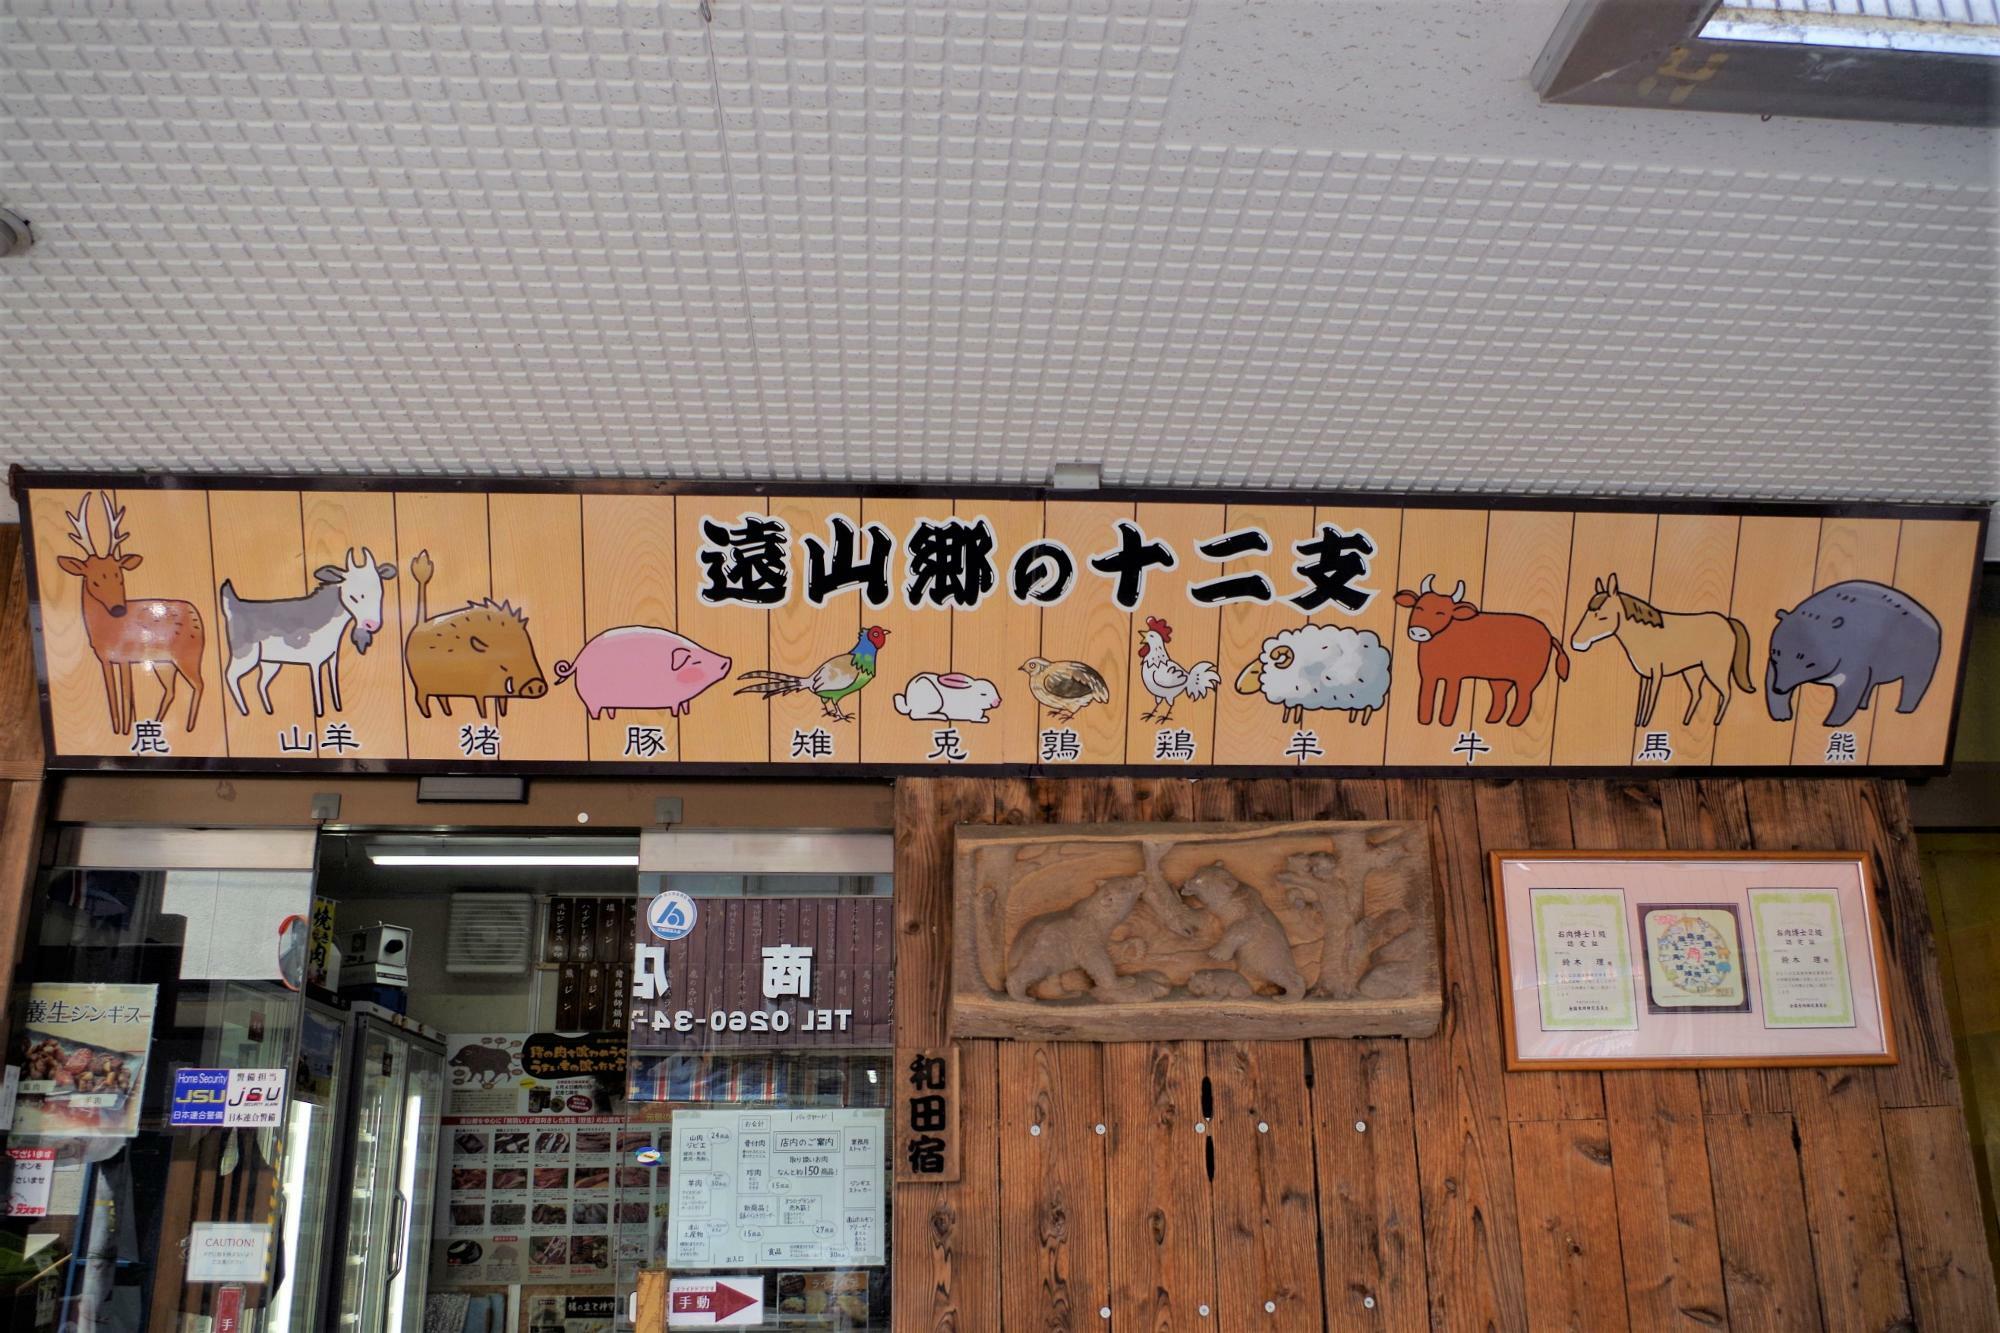 肉のスズキヤだからこそそろう十二畜種が、遠山の十二支として店頭に飾られています